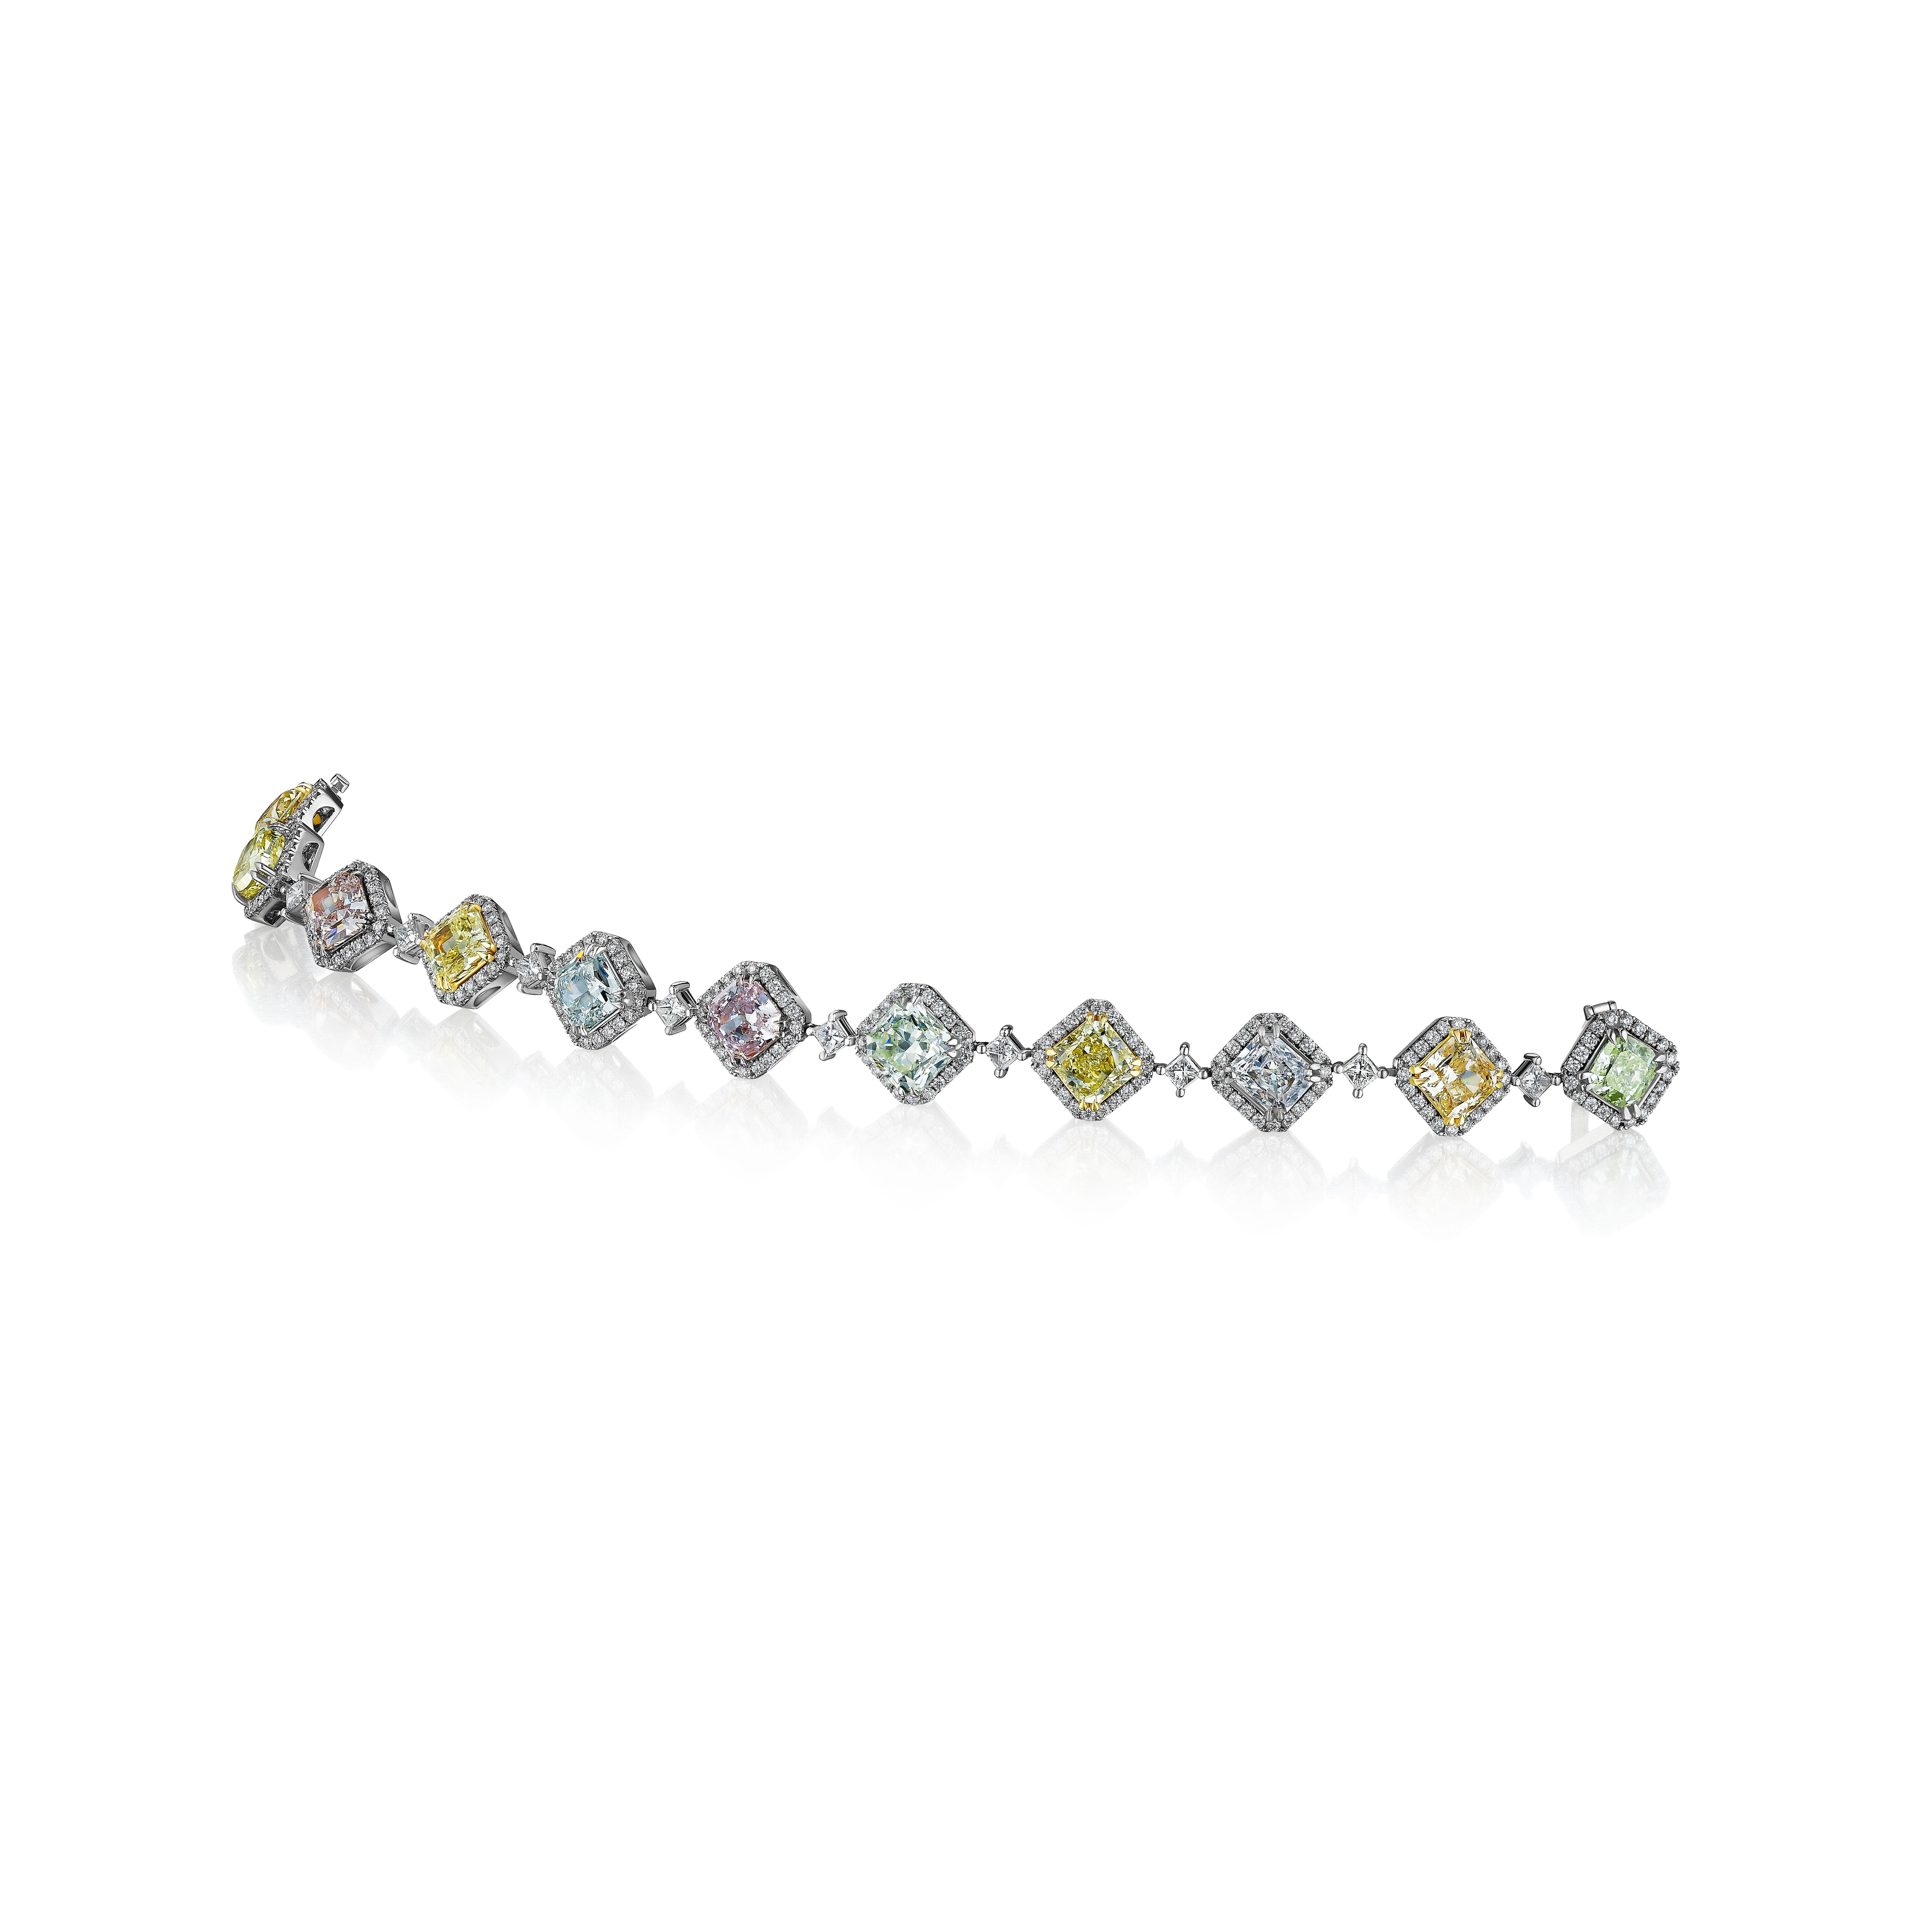 Ein sehr einzigartiges und mehrfarbiges Diamantarmband mit rosa, grünen, gelben, orangen und weißen Diamanten. Seltene Farben und ganz natürlich. 11 Diamanten mit einem Gewicht von je 1,03-2,04 Karat und einem GIA-Zertifikat von insgesamt 15,17